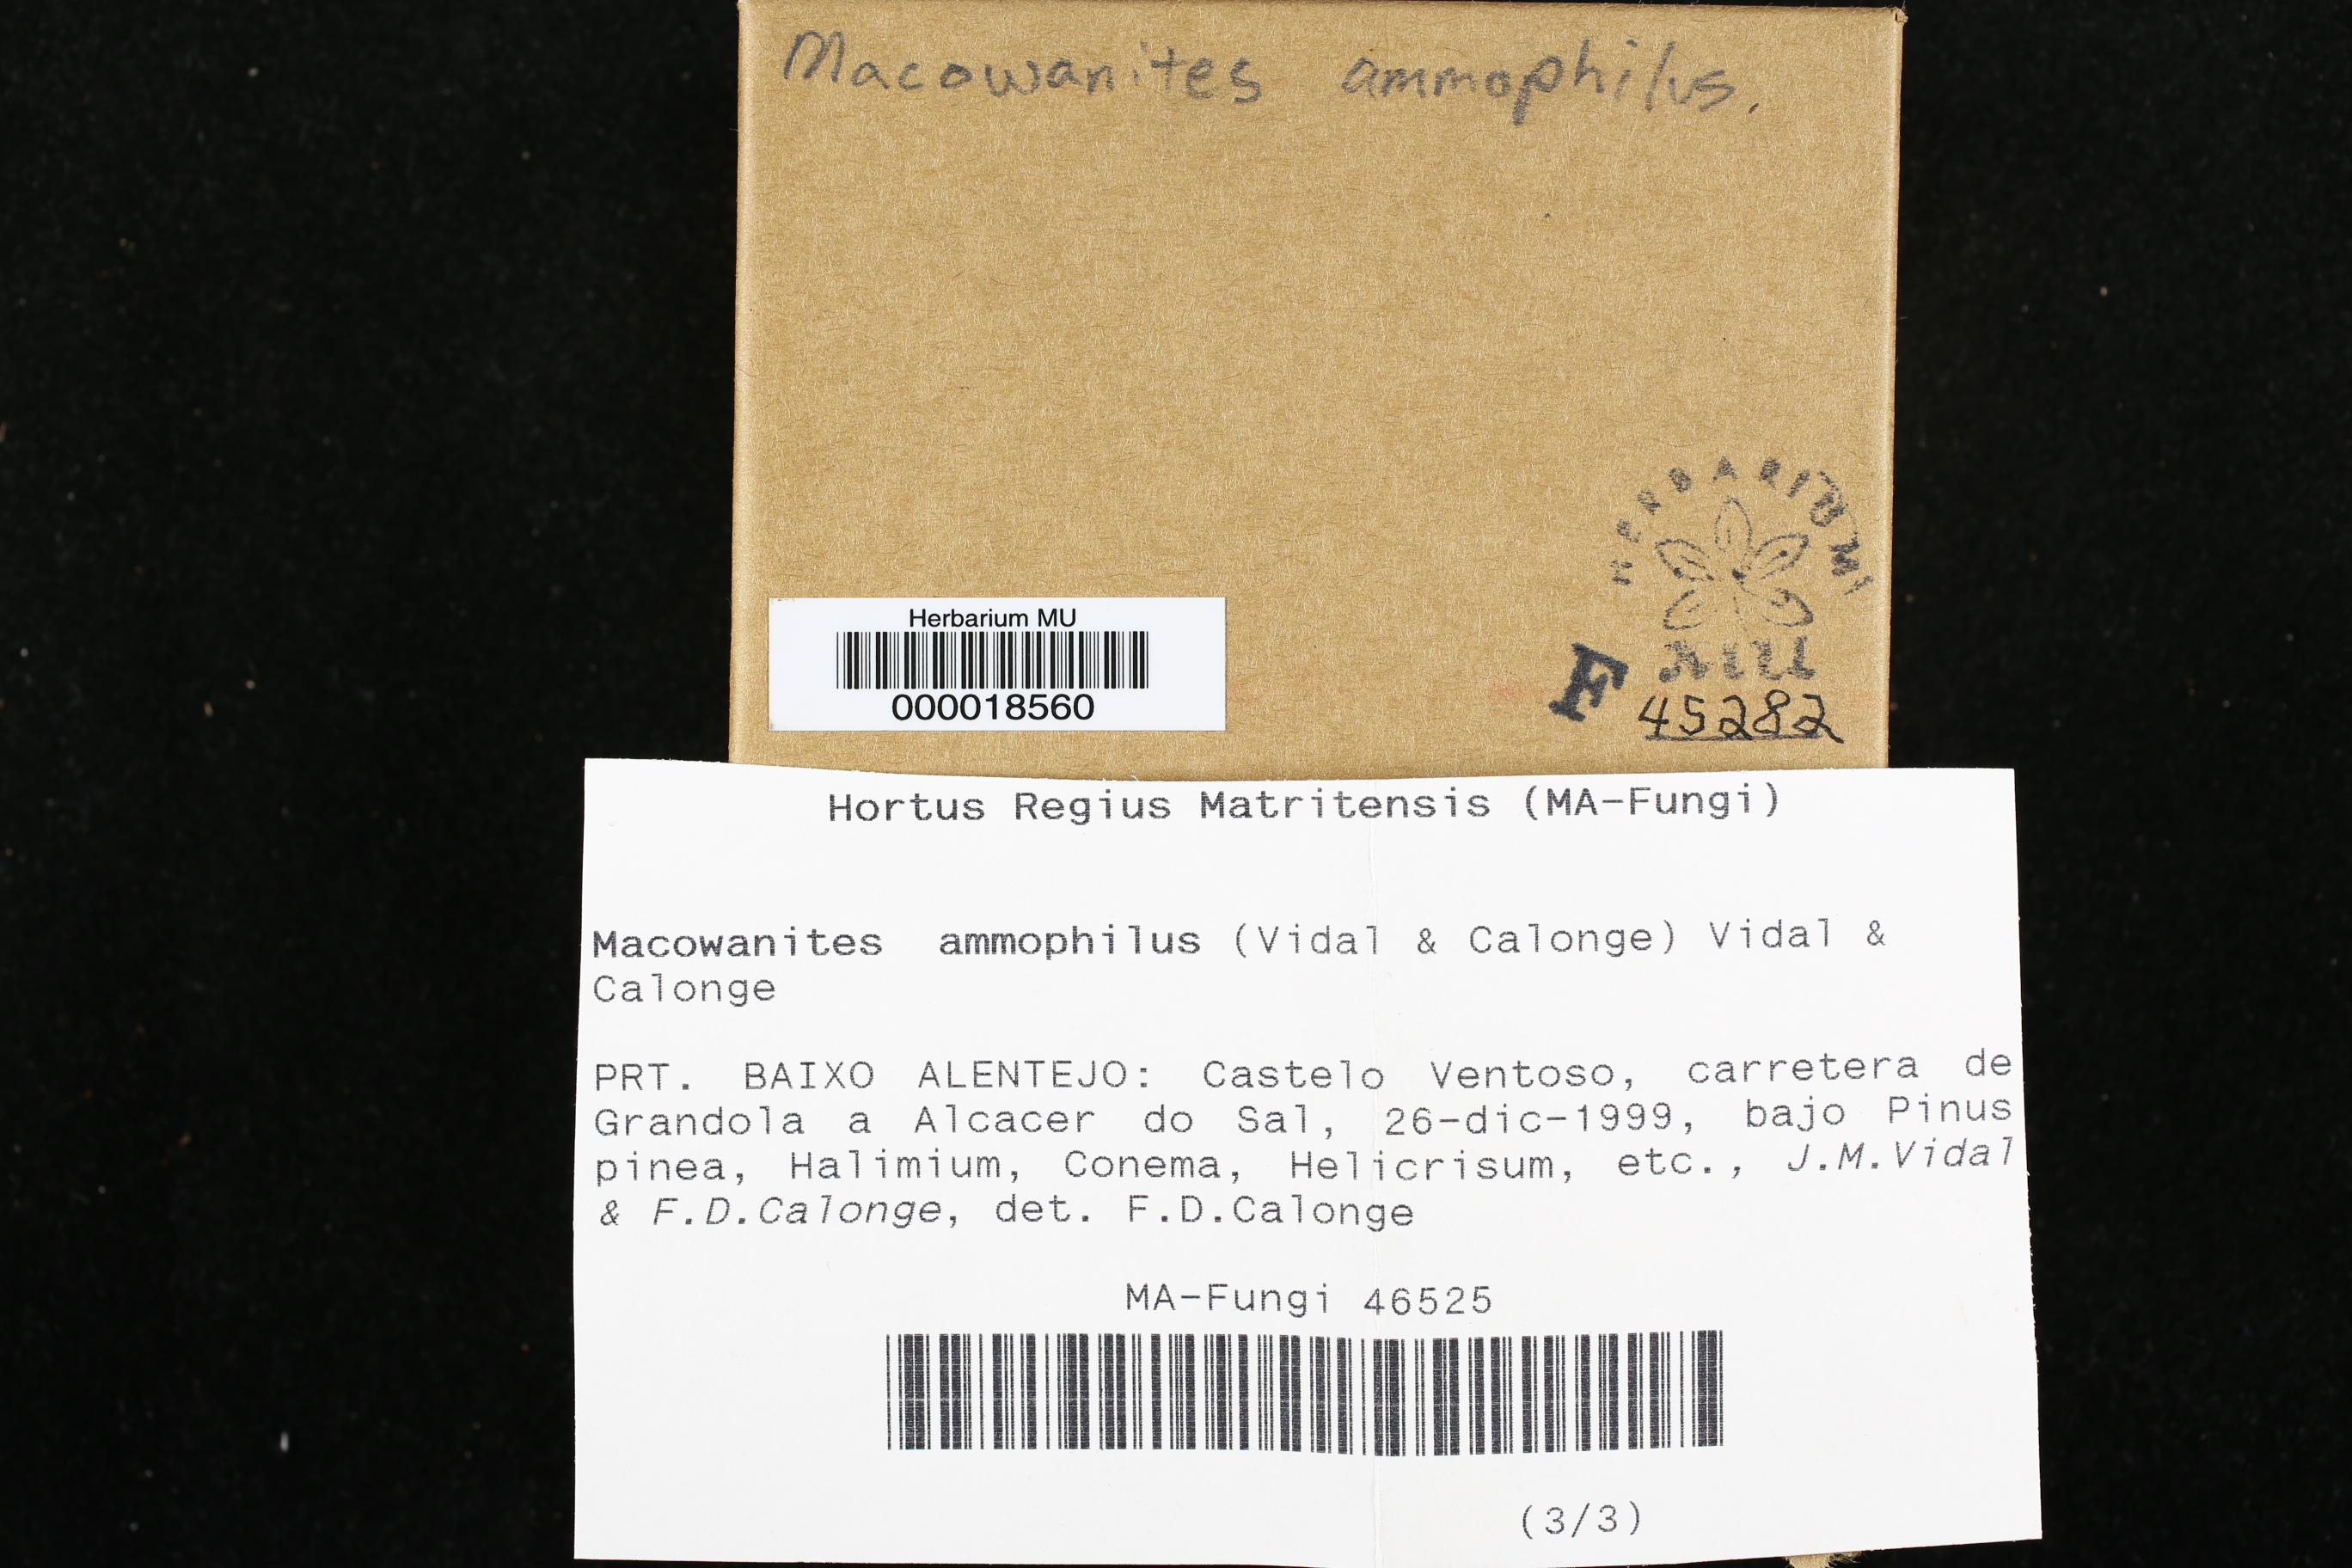 Macowanites ammophilus image